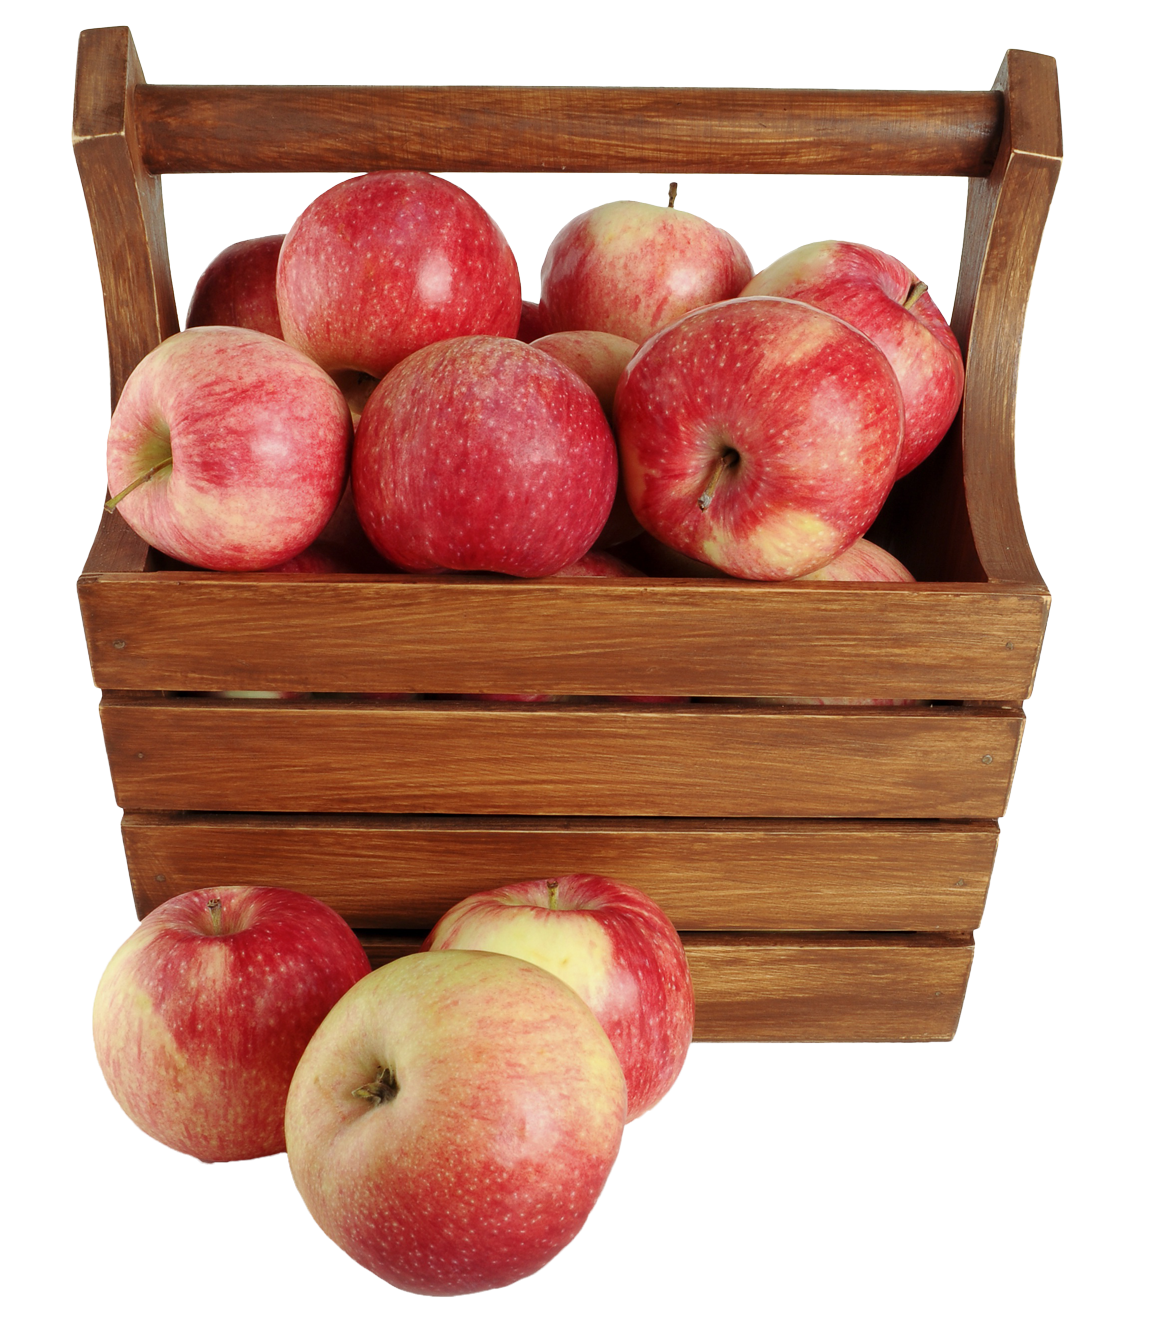 Download PNG image - Fruit Basket Closeup Transparent Background 